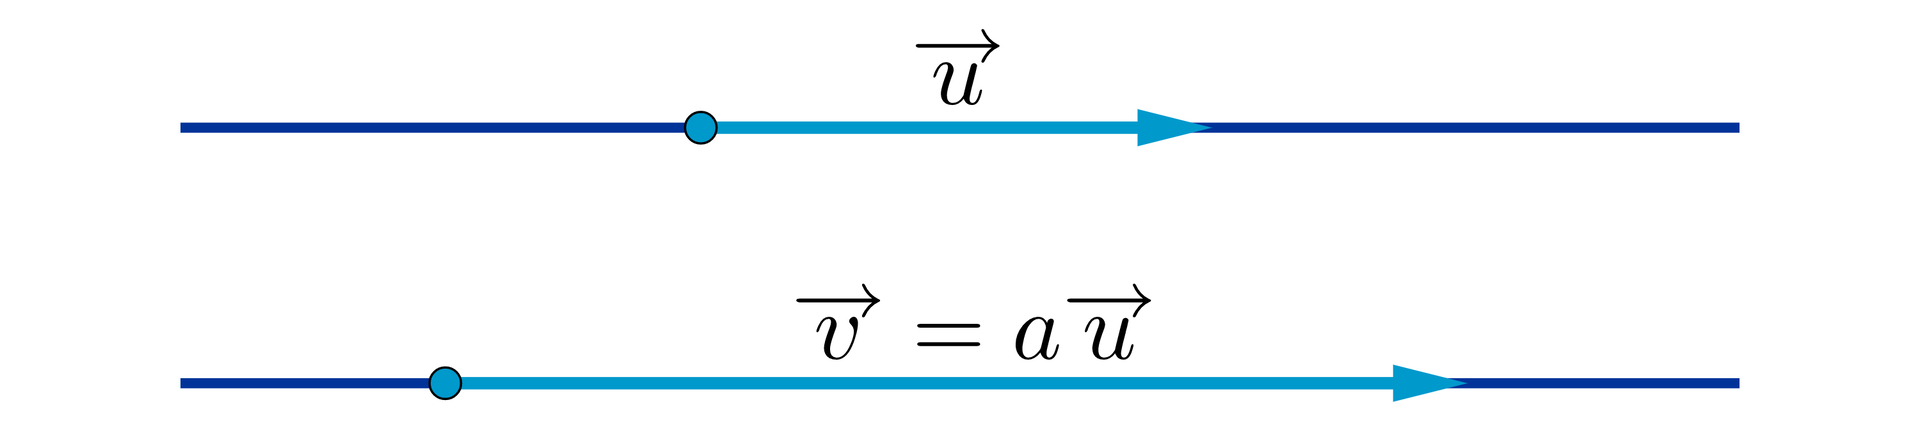 Na ilustracji przedstawione są dwie poziome proste jedna pod drugą. Na prostej położonej wyżej narysowany jest wektor u. Na prostej poniżej narysowany jest dłuższy wektor opisany jako v→=au→.